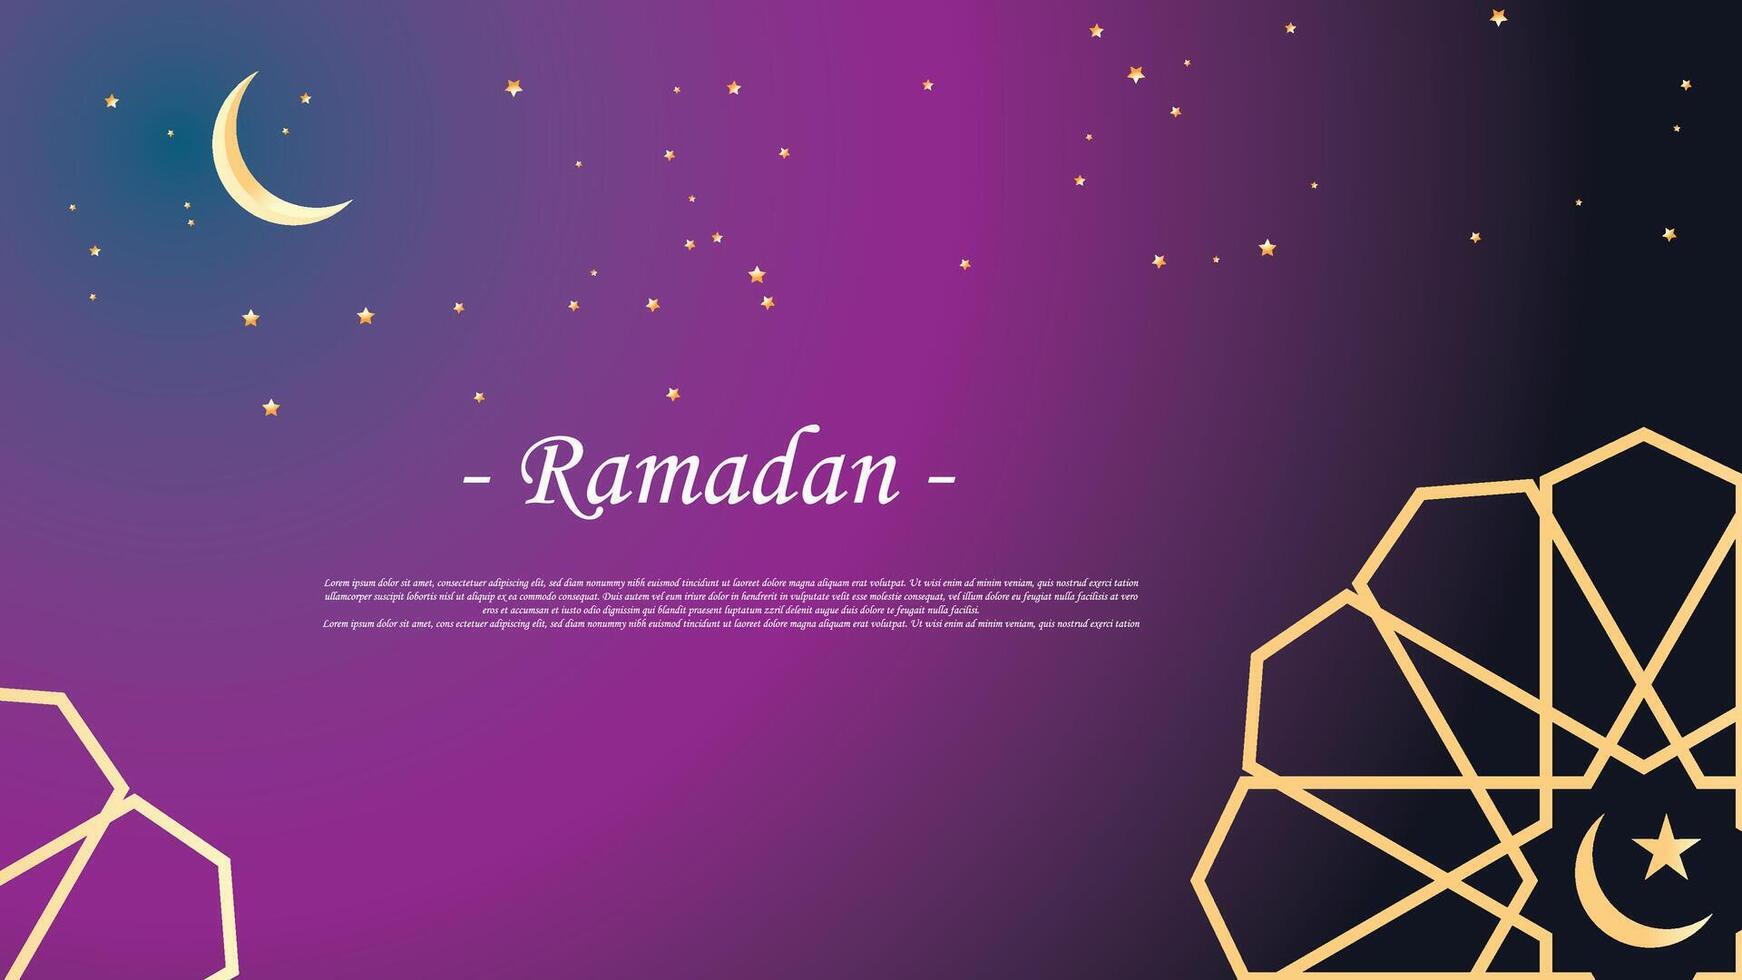 Ramadán kareem vector ilustración, Ramadán fiesta celebracion antecedentes